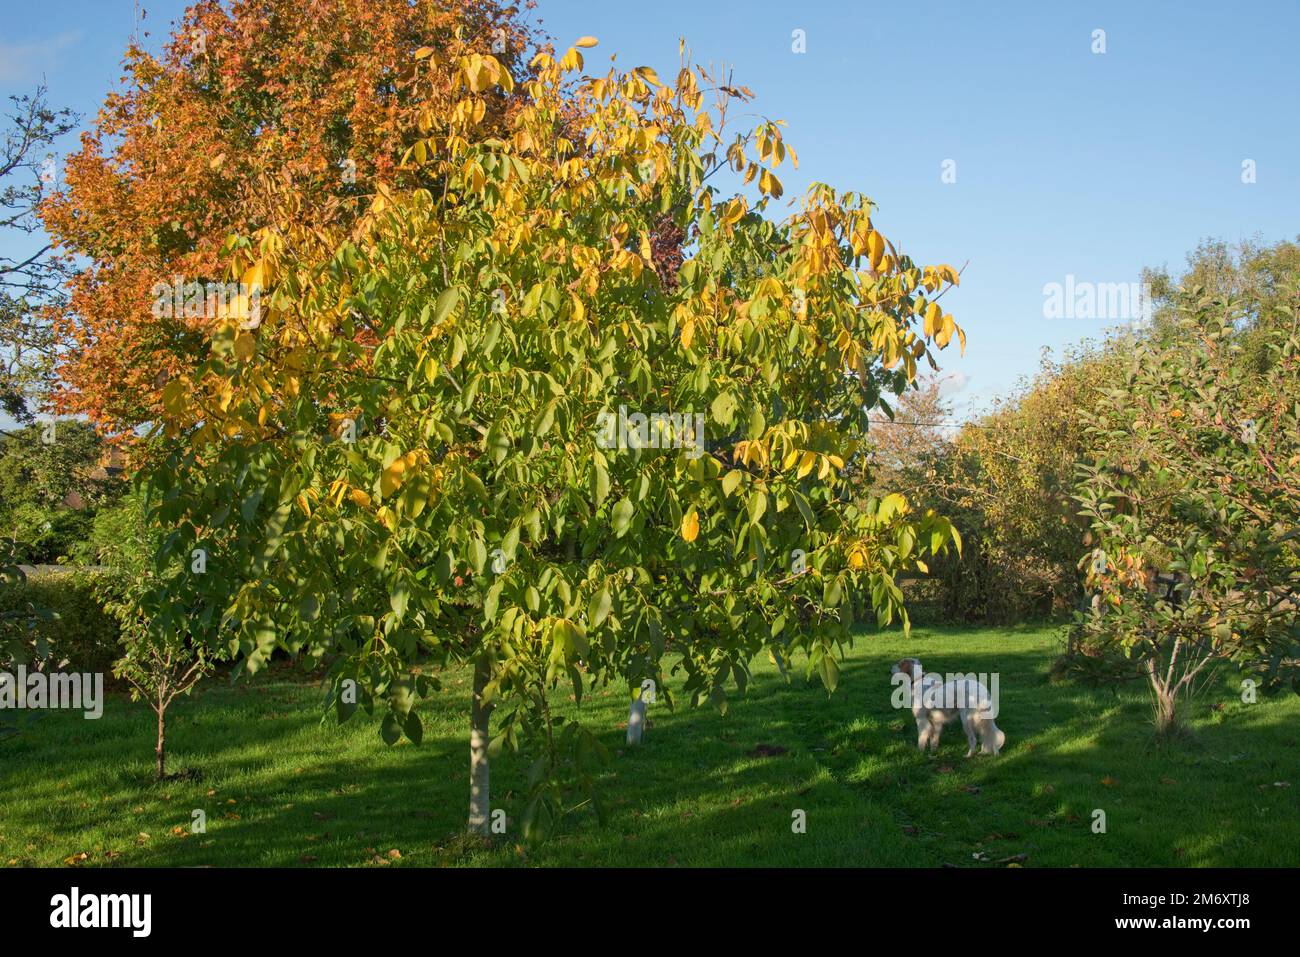 Un giardino frutteto in una bella giornata autunnale con un albero di noce e altri alberi da frutto in colori luminosi contro un cielo blu, Berkshire, ottobre Foto Stock